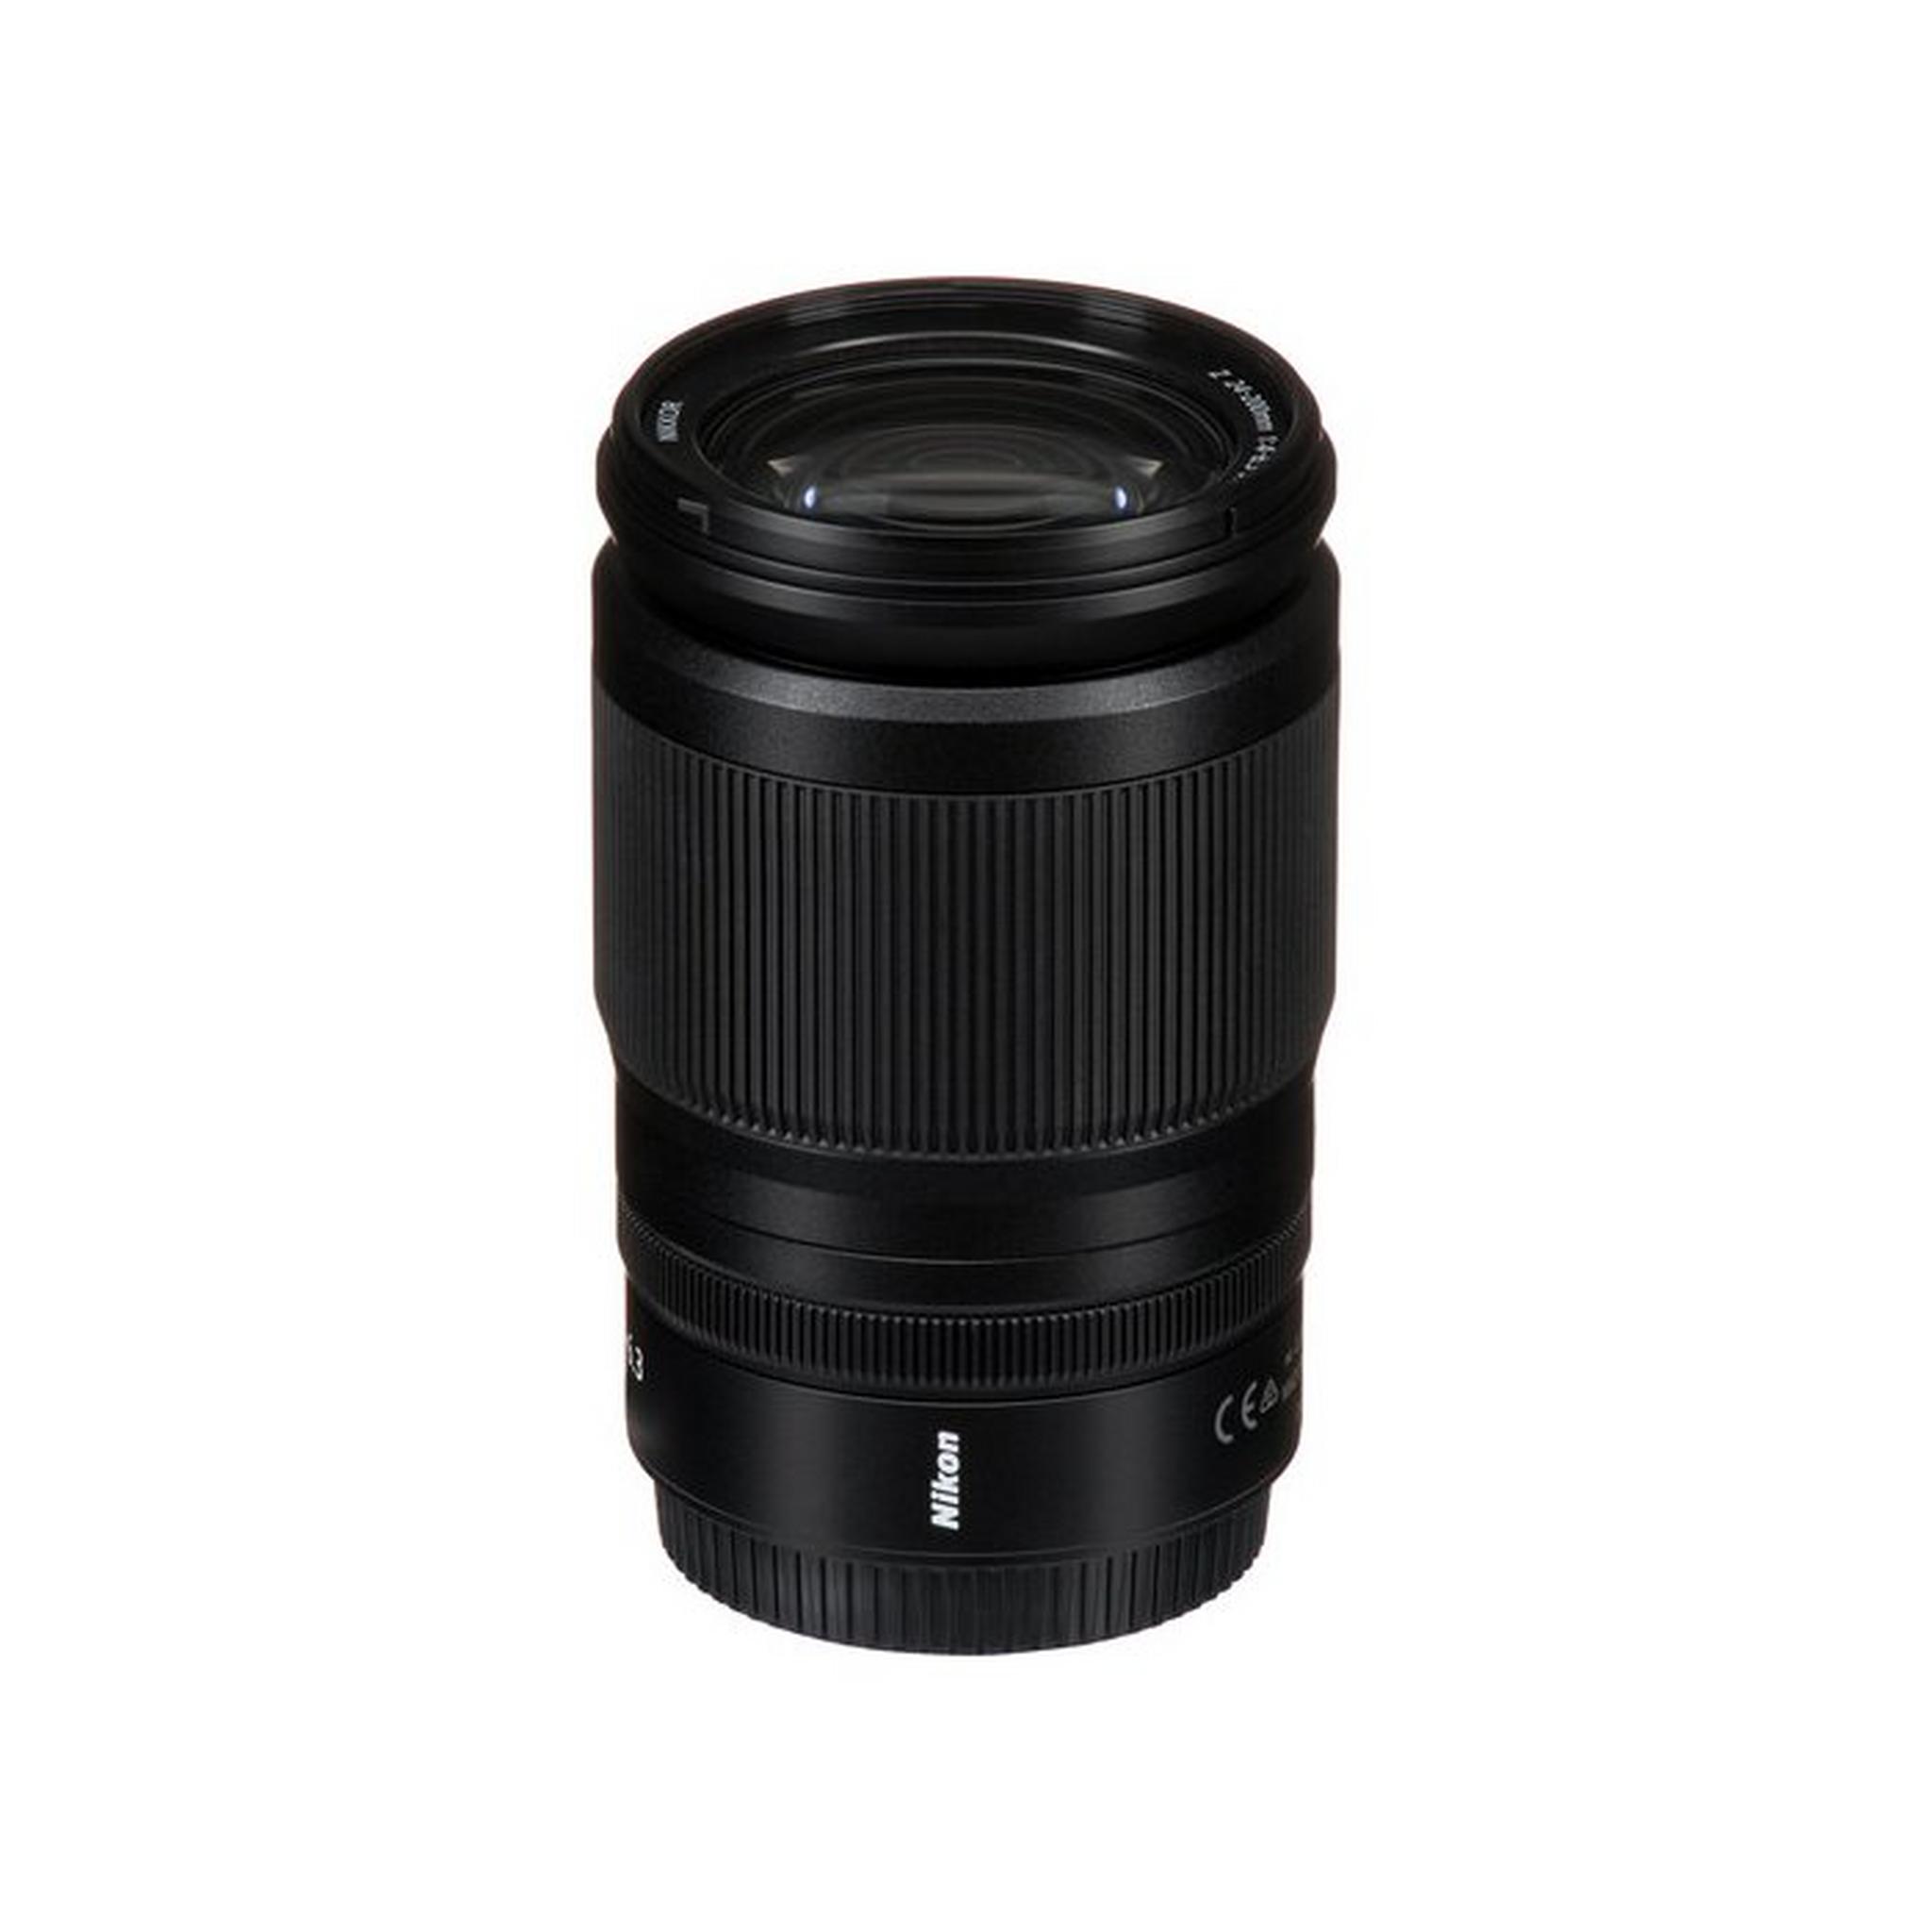 Nikon NIKKOR Z 24-200mm f/4-6.3 VR Lens - Black